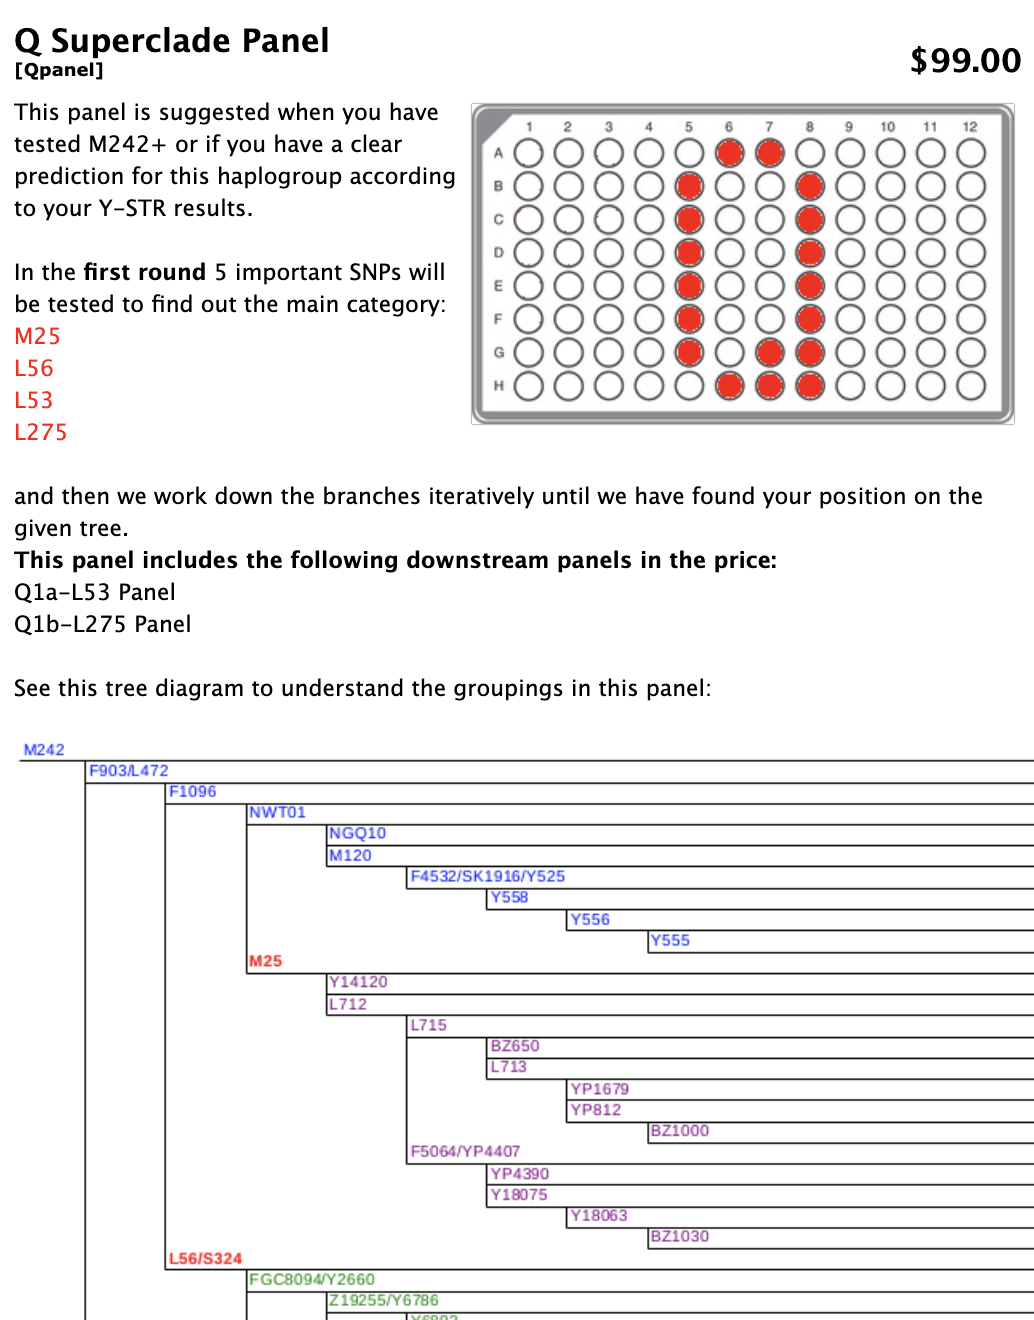 Detalles del panel Q Superclade con un diagrama de un panel con varios círculos coloreados en rojo. En la parte inferior, un diagrama de árbol que explica las agrupaciones del panel